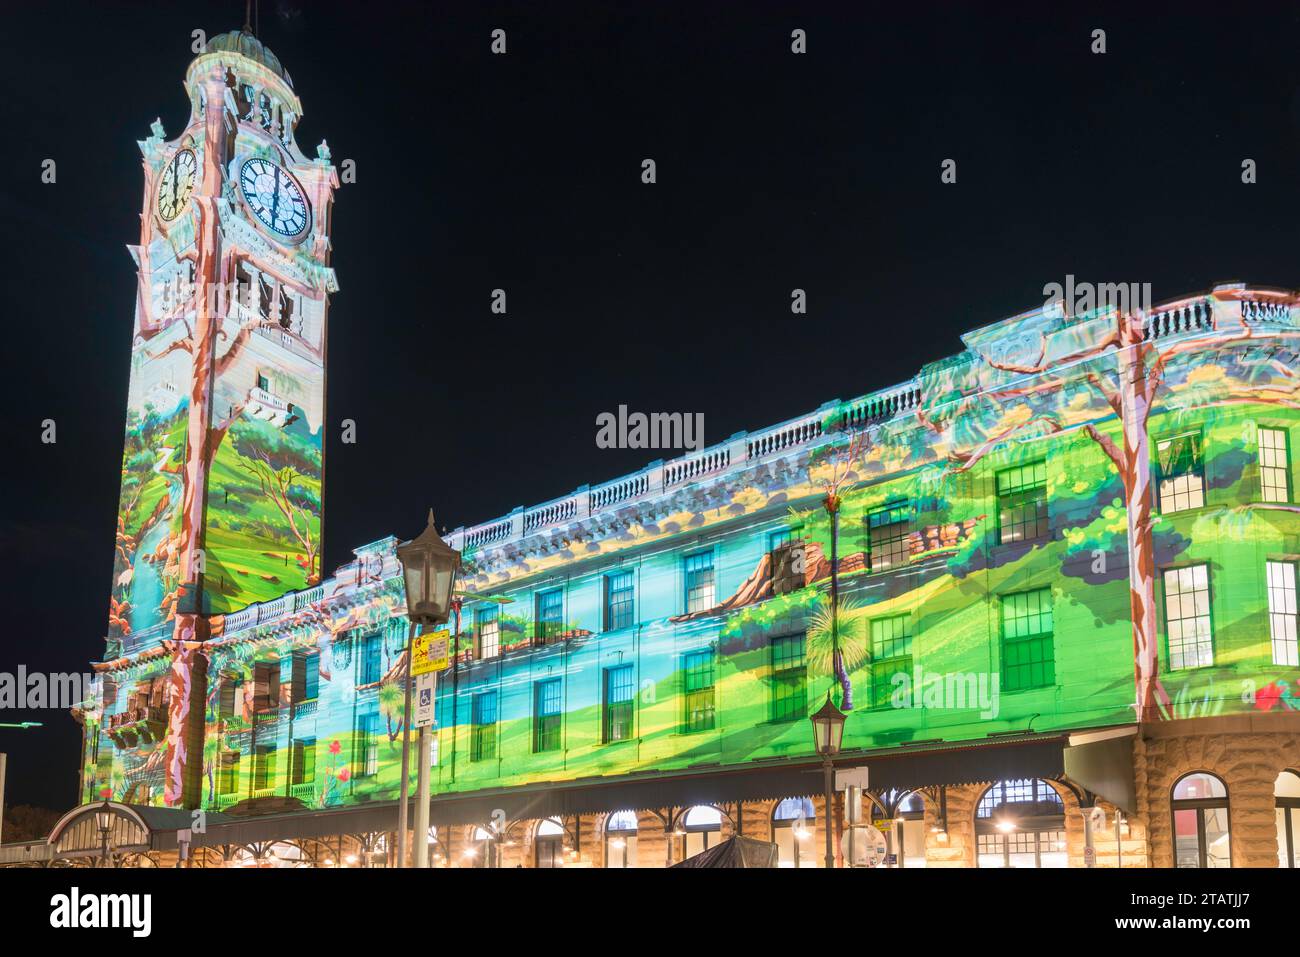 Le côté Pitt Street et Central Forecourt de la gare centrale de Sydney est illuminé avec des projections changeantes pendant le Festival de la lumière Vivid 2023. Banque D'Images